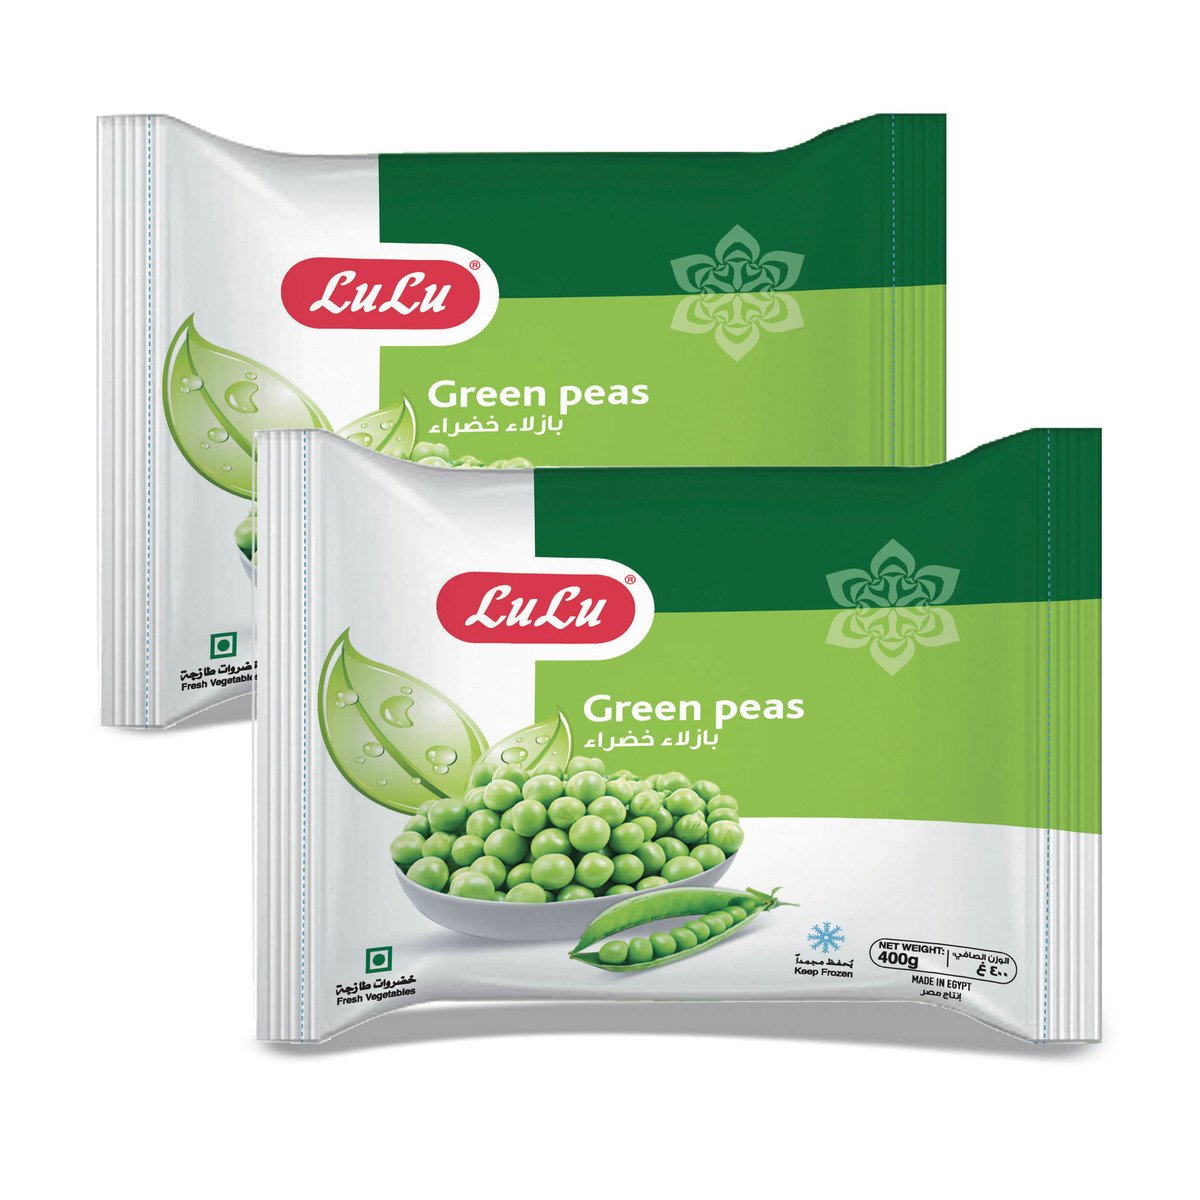 Buy LuLu Frozen Green Peas 2 x 400 g Online at Best Price | Green Peas | Lulu Kuwait in UAE